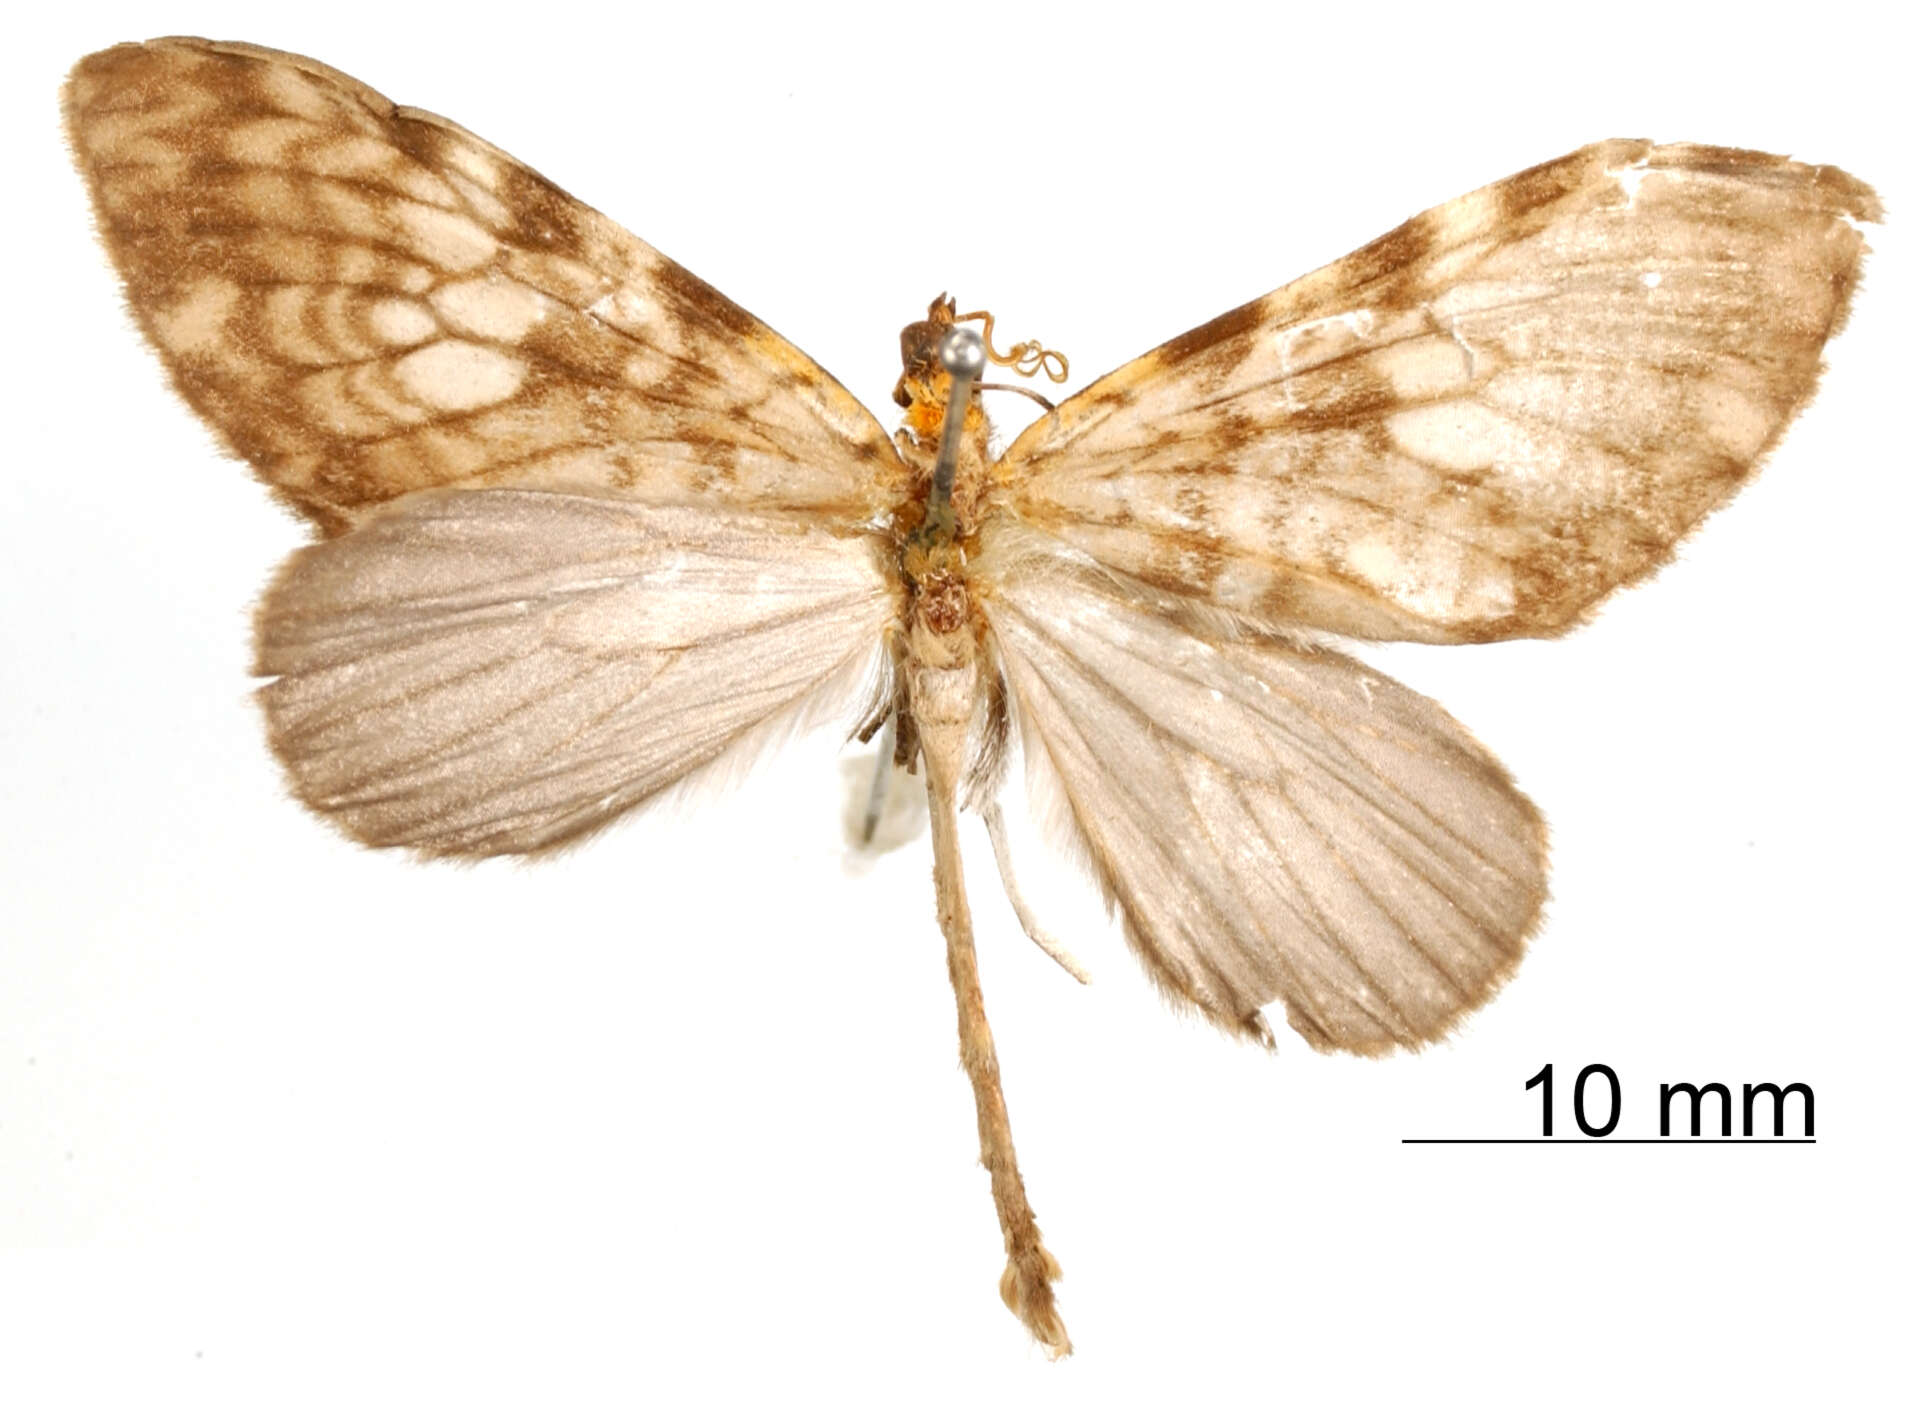 Image of Graphidipus subcaesia Dognin 1912